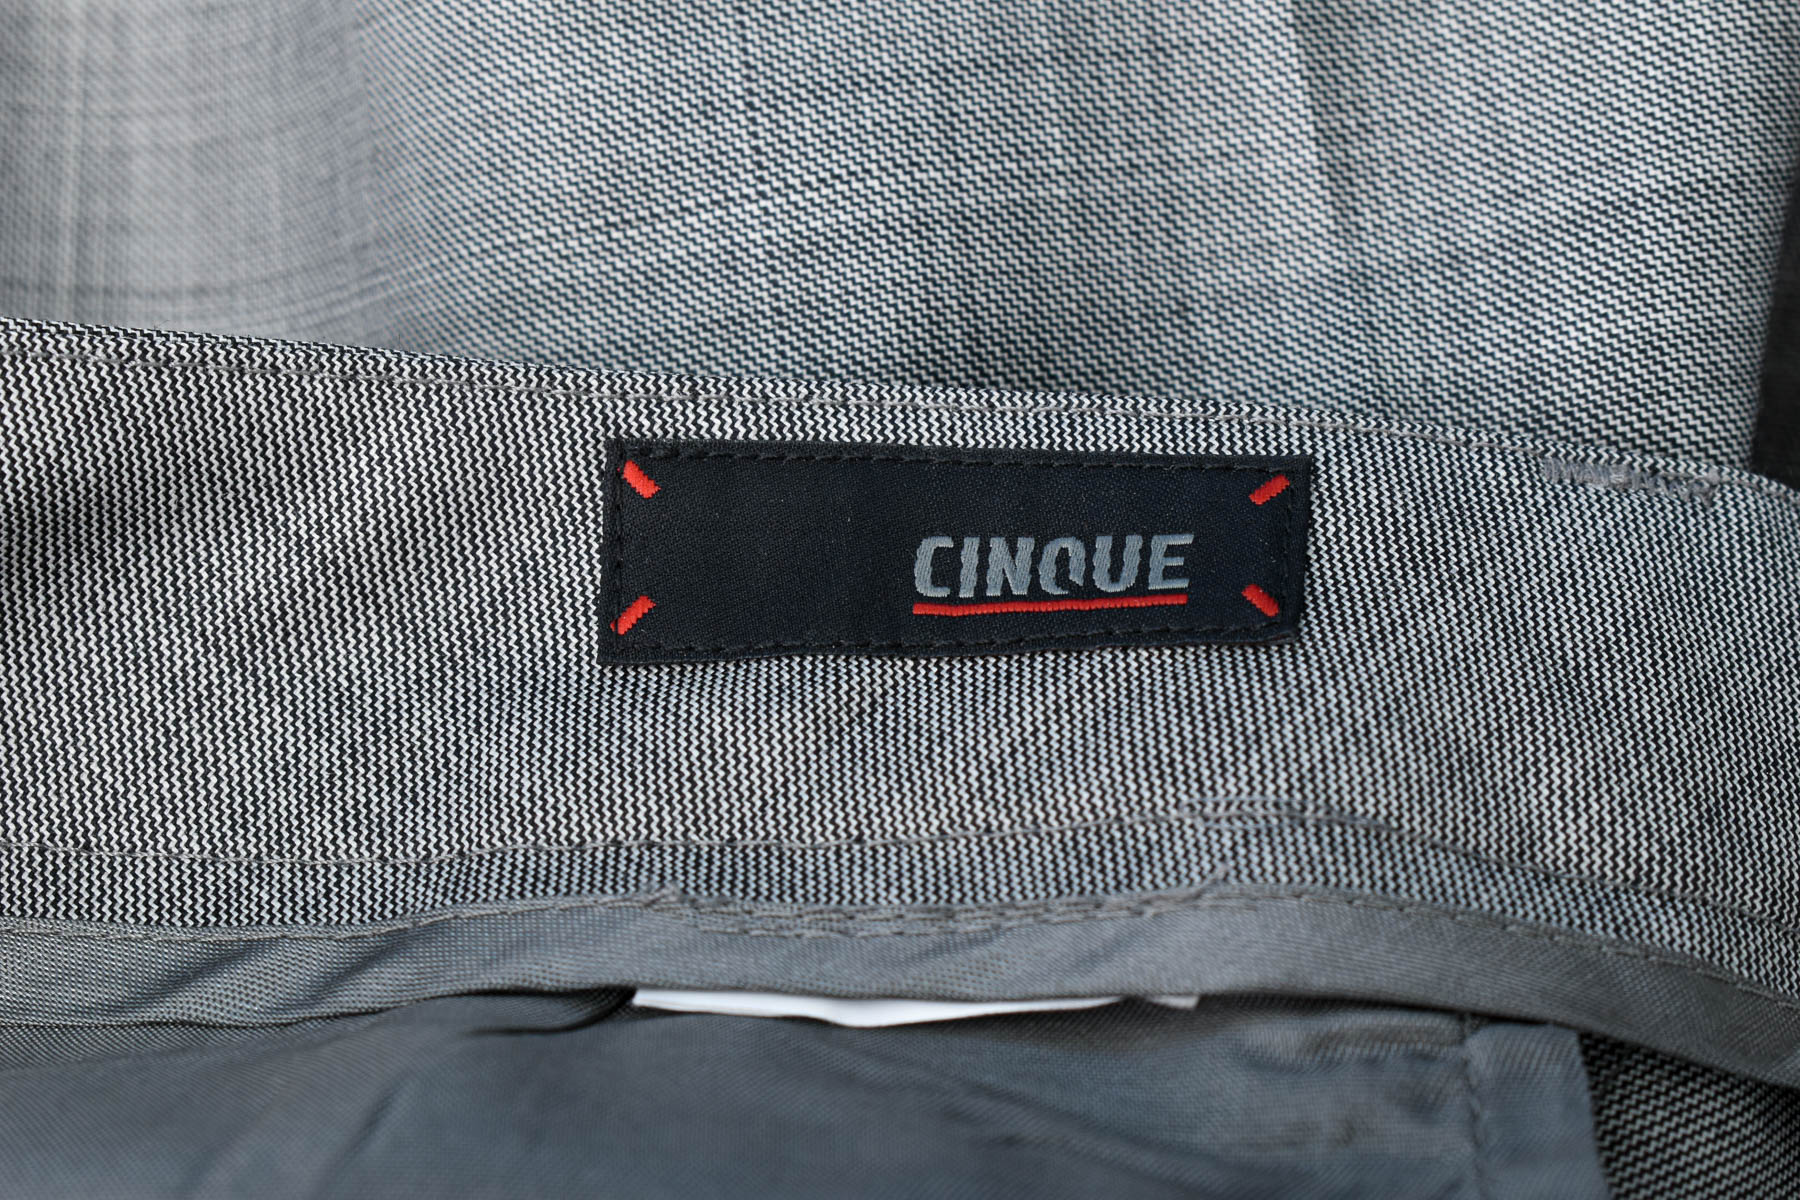 Spodnie damskie - CINQUE - 2